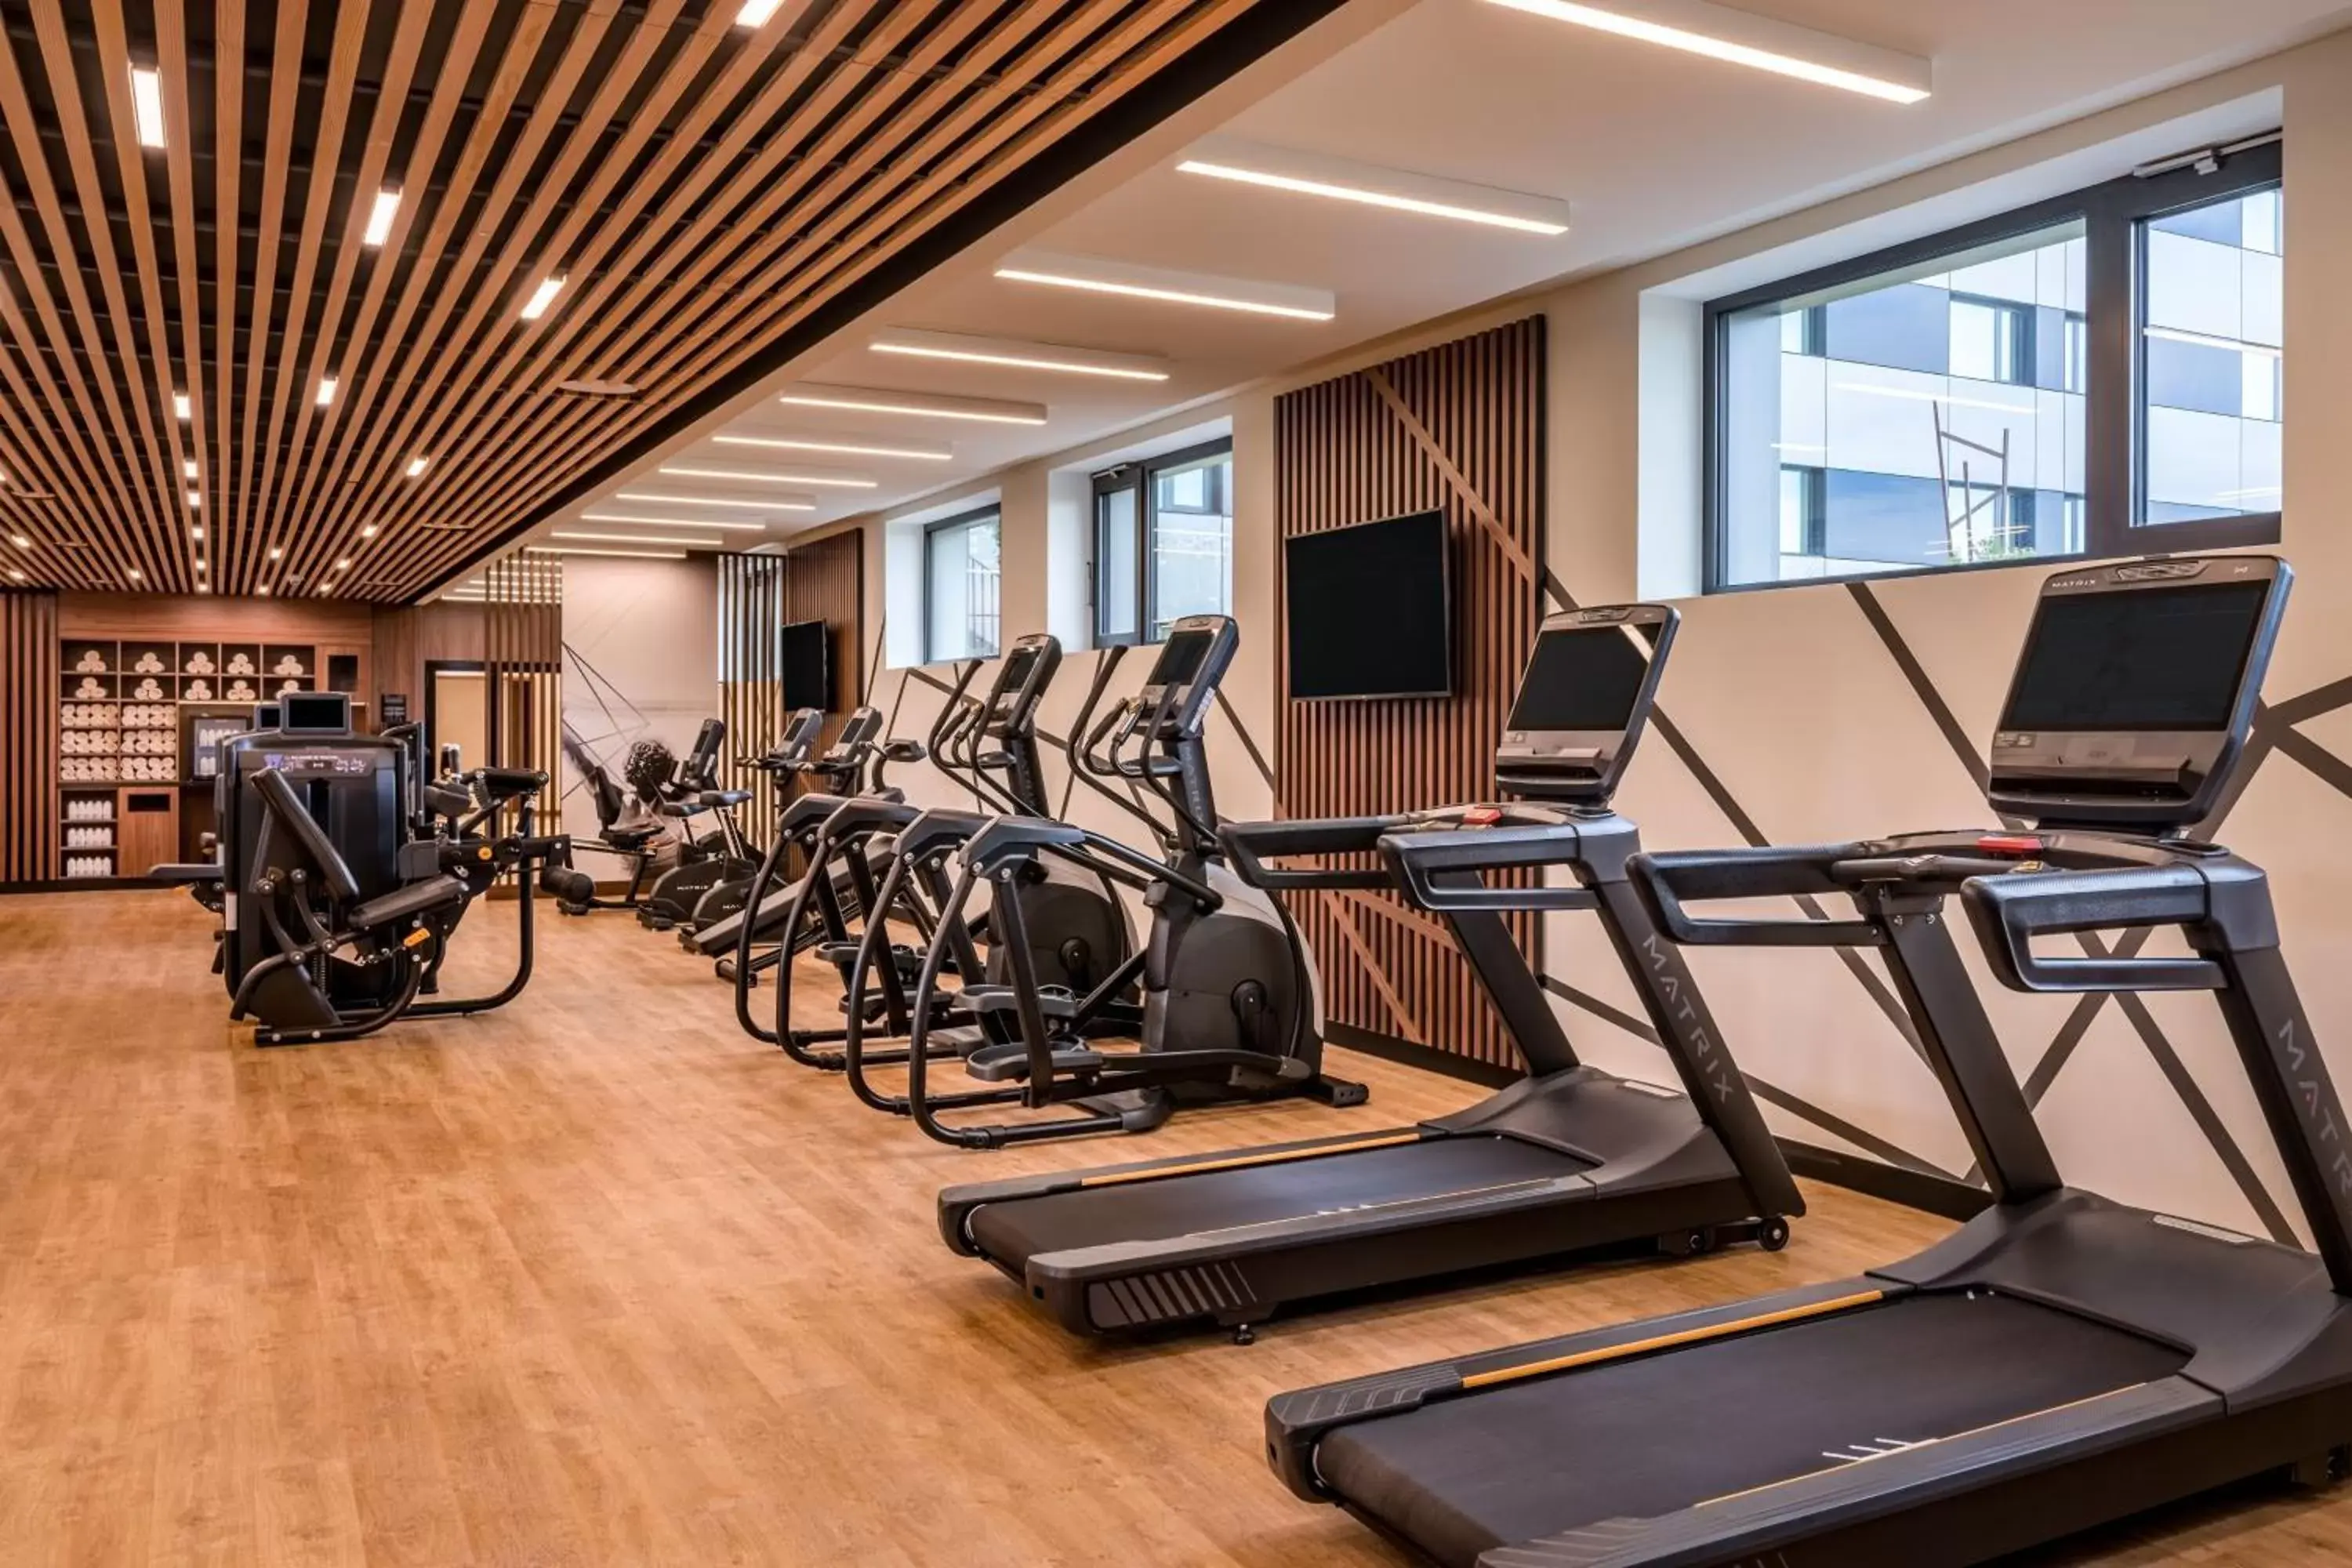 Fitness centre/facilities, Fitness Center/Facilities in Geneva Marriott Hotel